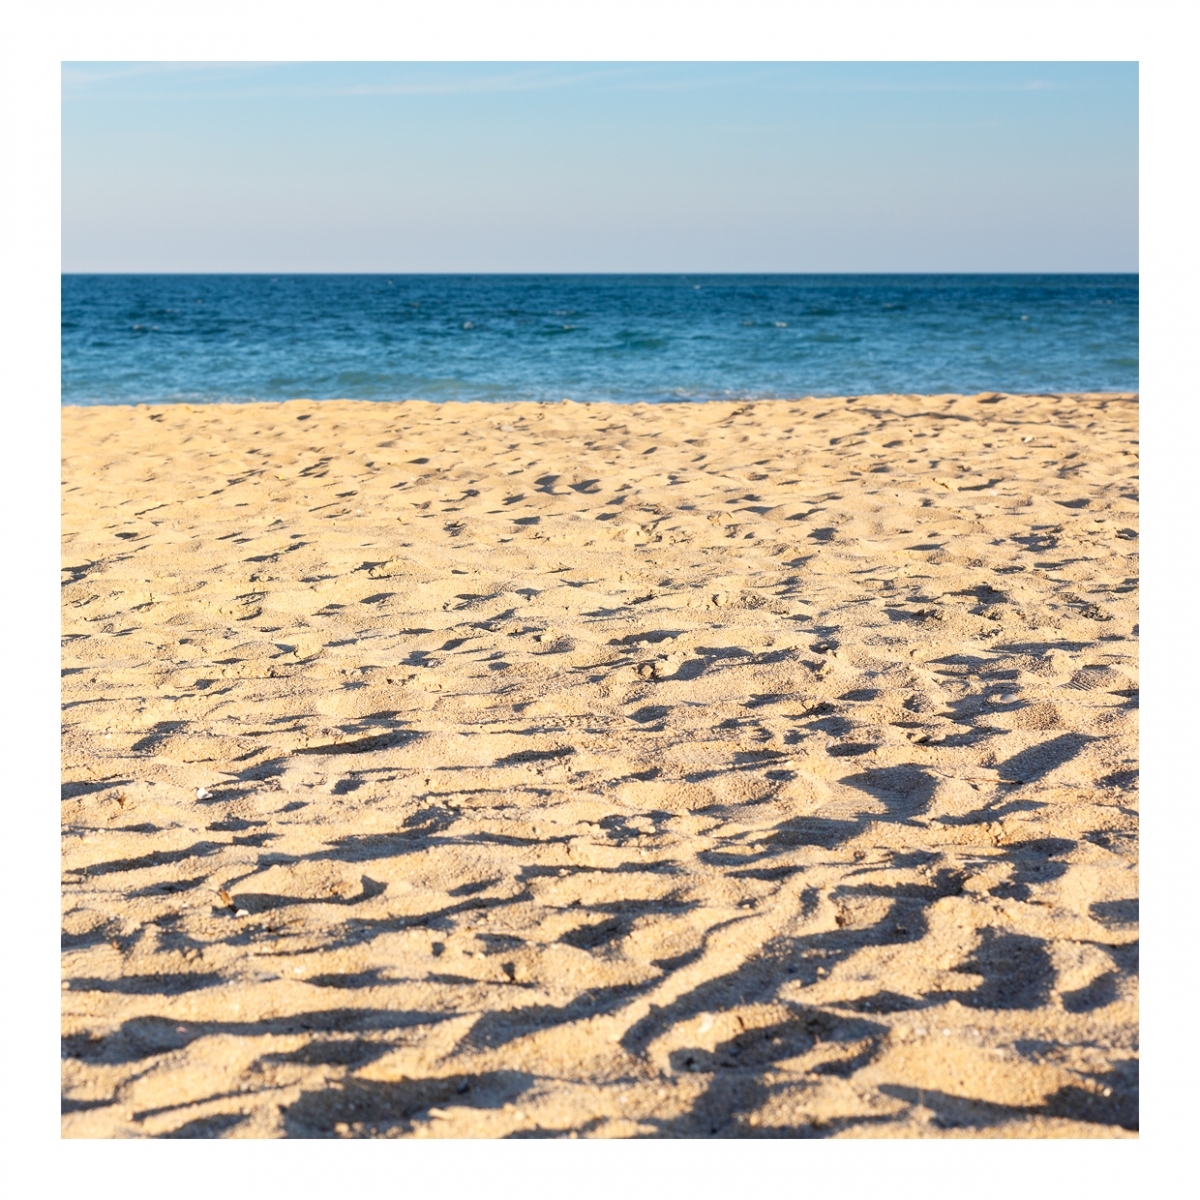 Imagen en la que se ve una playa de arena con el mar al fondo